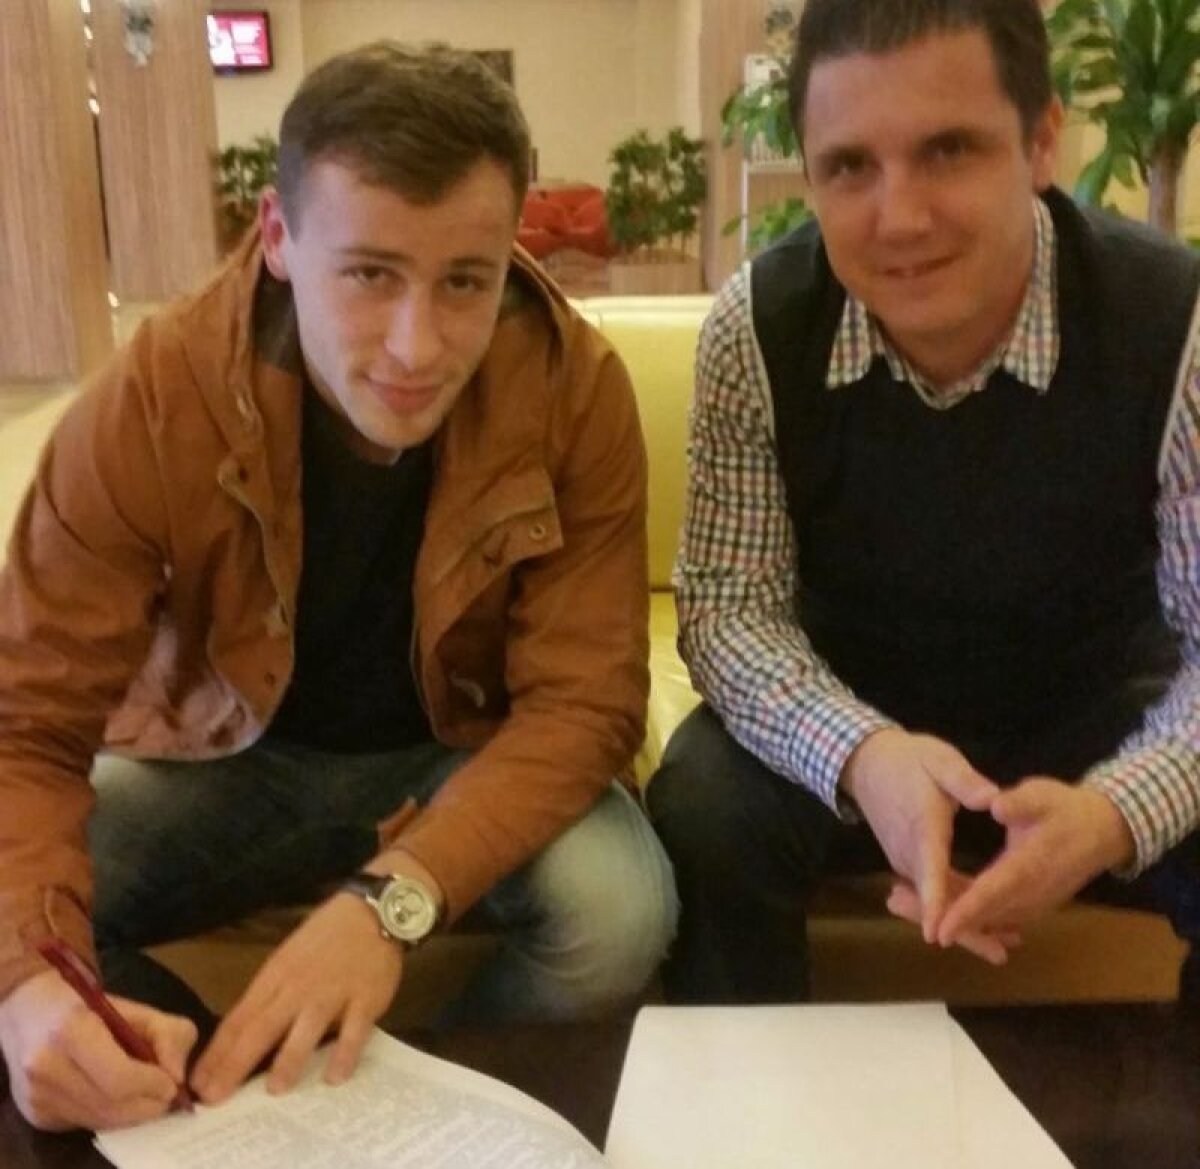 Astra a făcut primul transfer: a semnat croatul Filip Mrzljak pe 3 ani şi jumătate